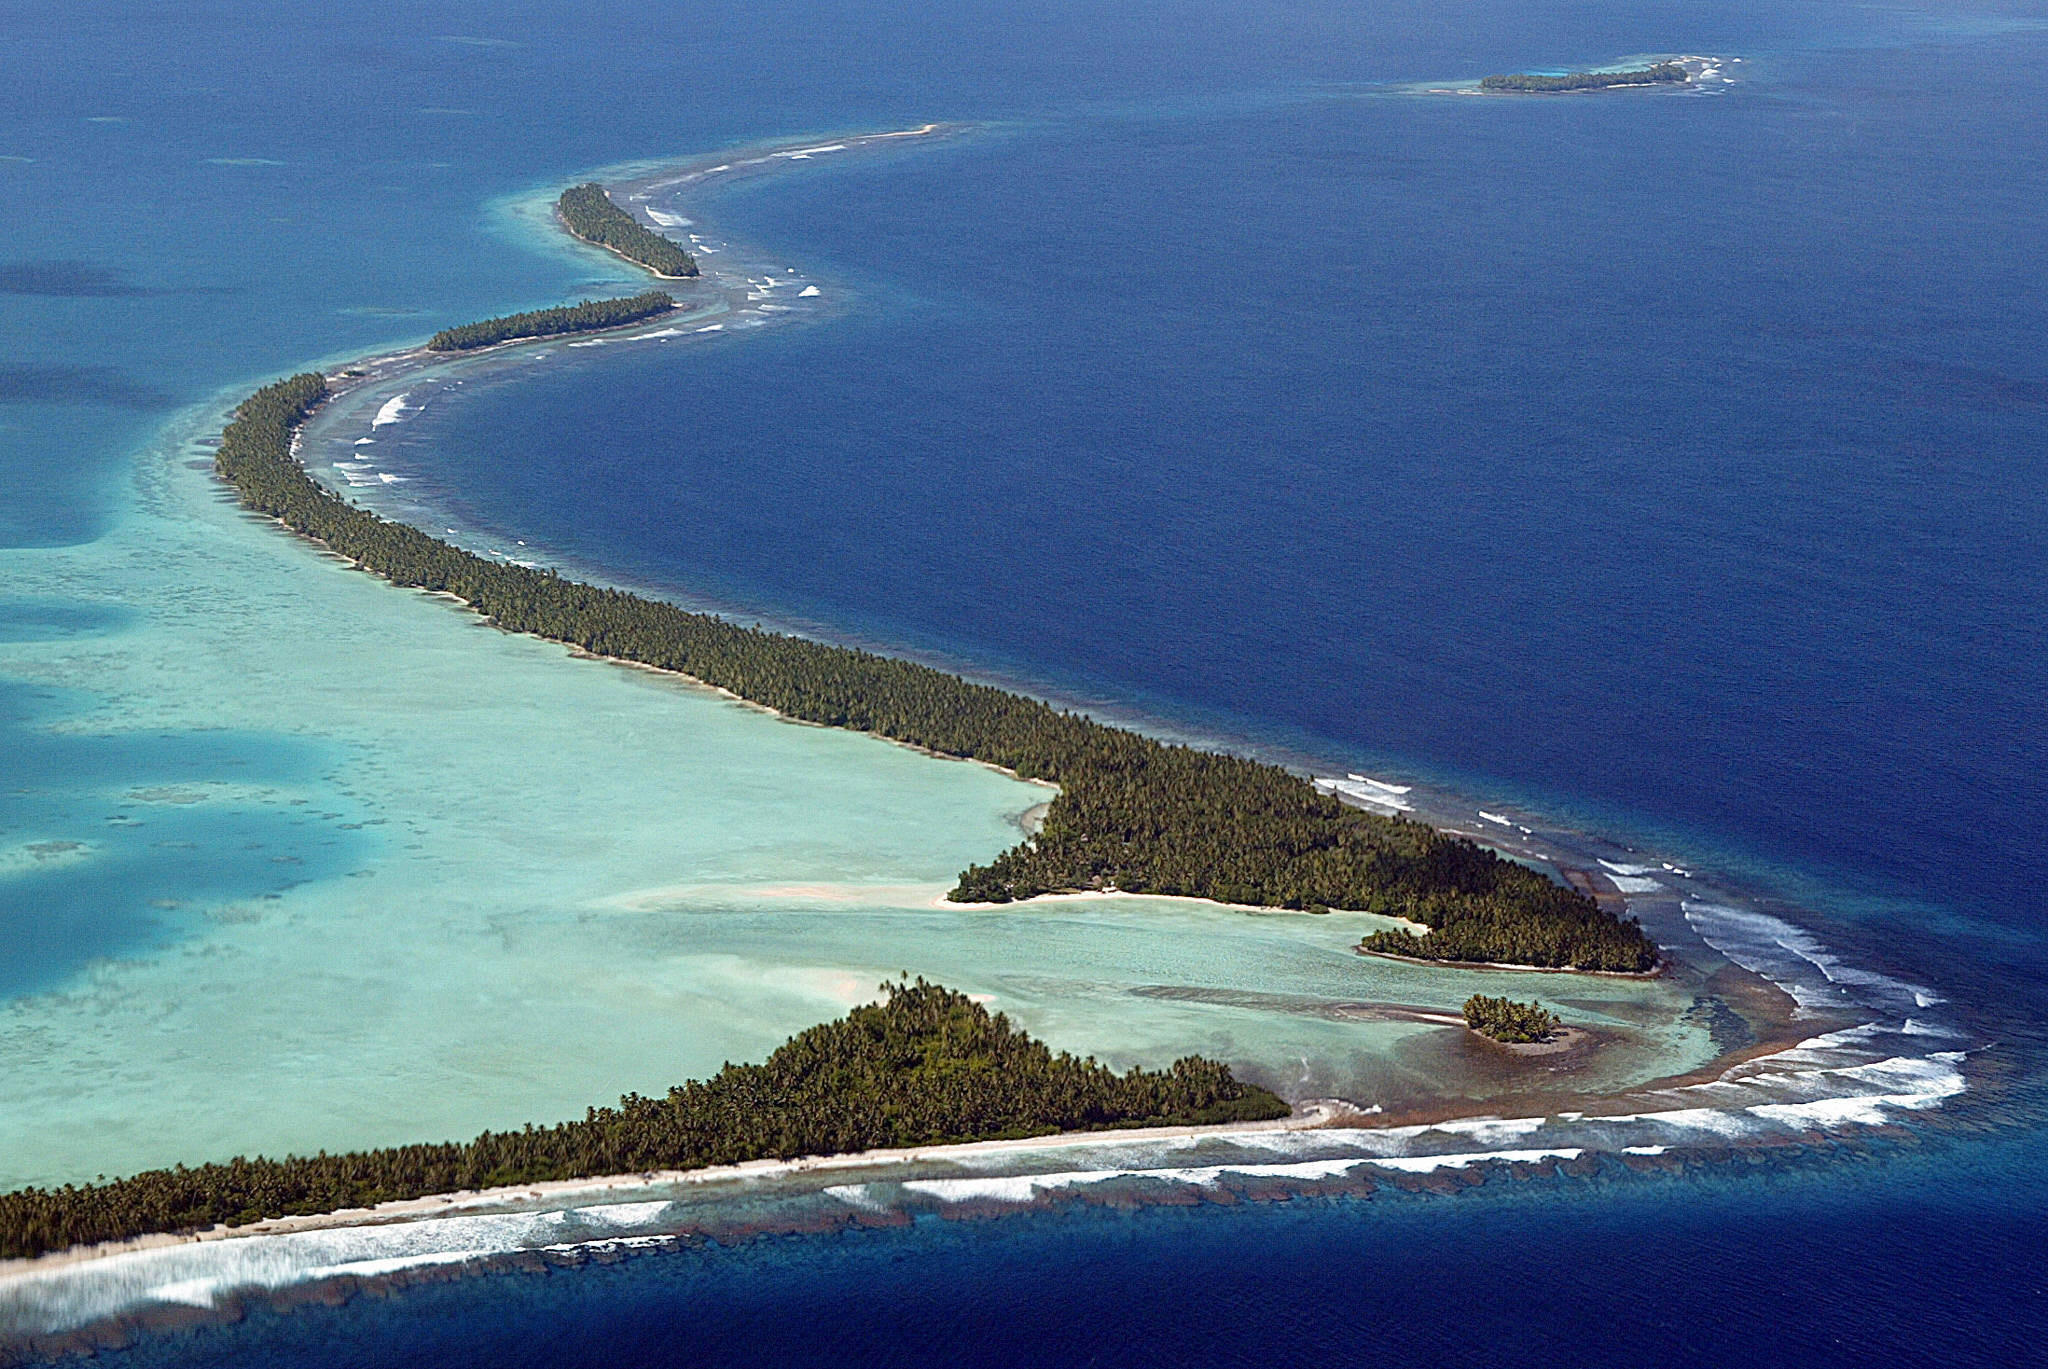 The Funafuti Atoll in the Pacific.